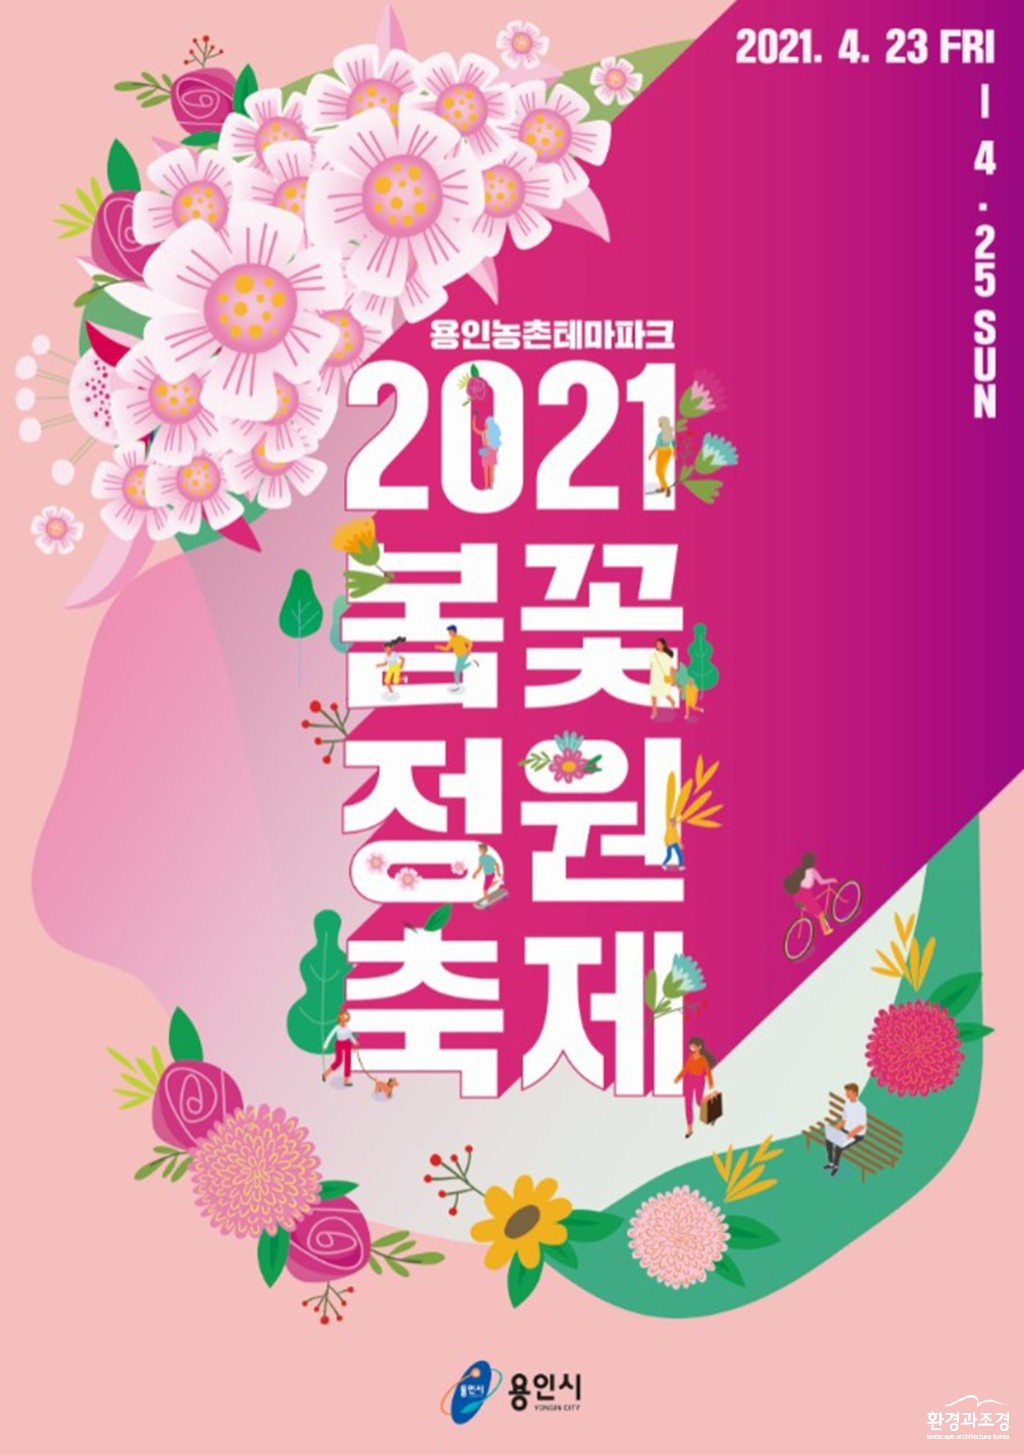 210412_23_25일 농촌테마파크서 ‘봄꽃 정원 축제’ 개최_포스터 보도.jpg